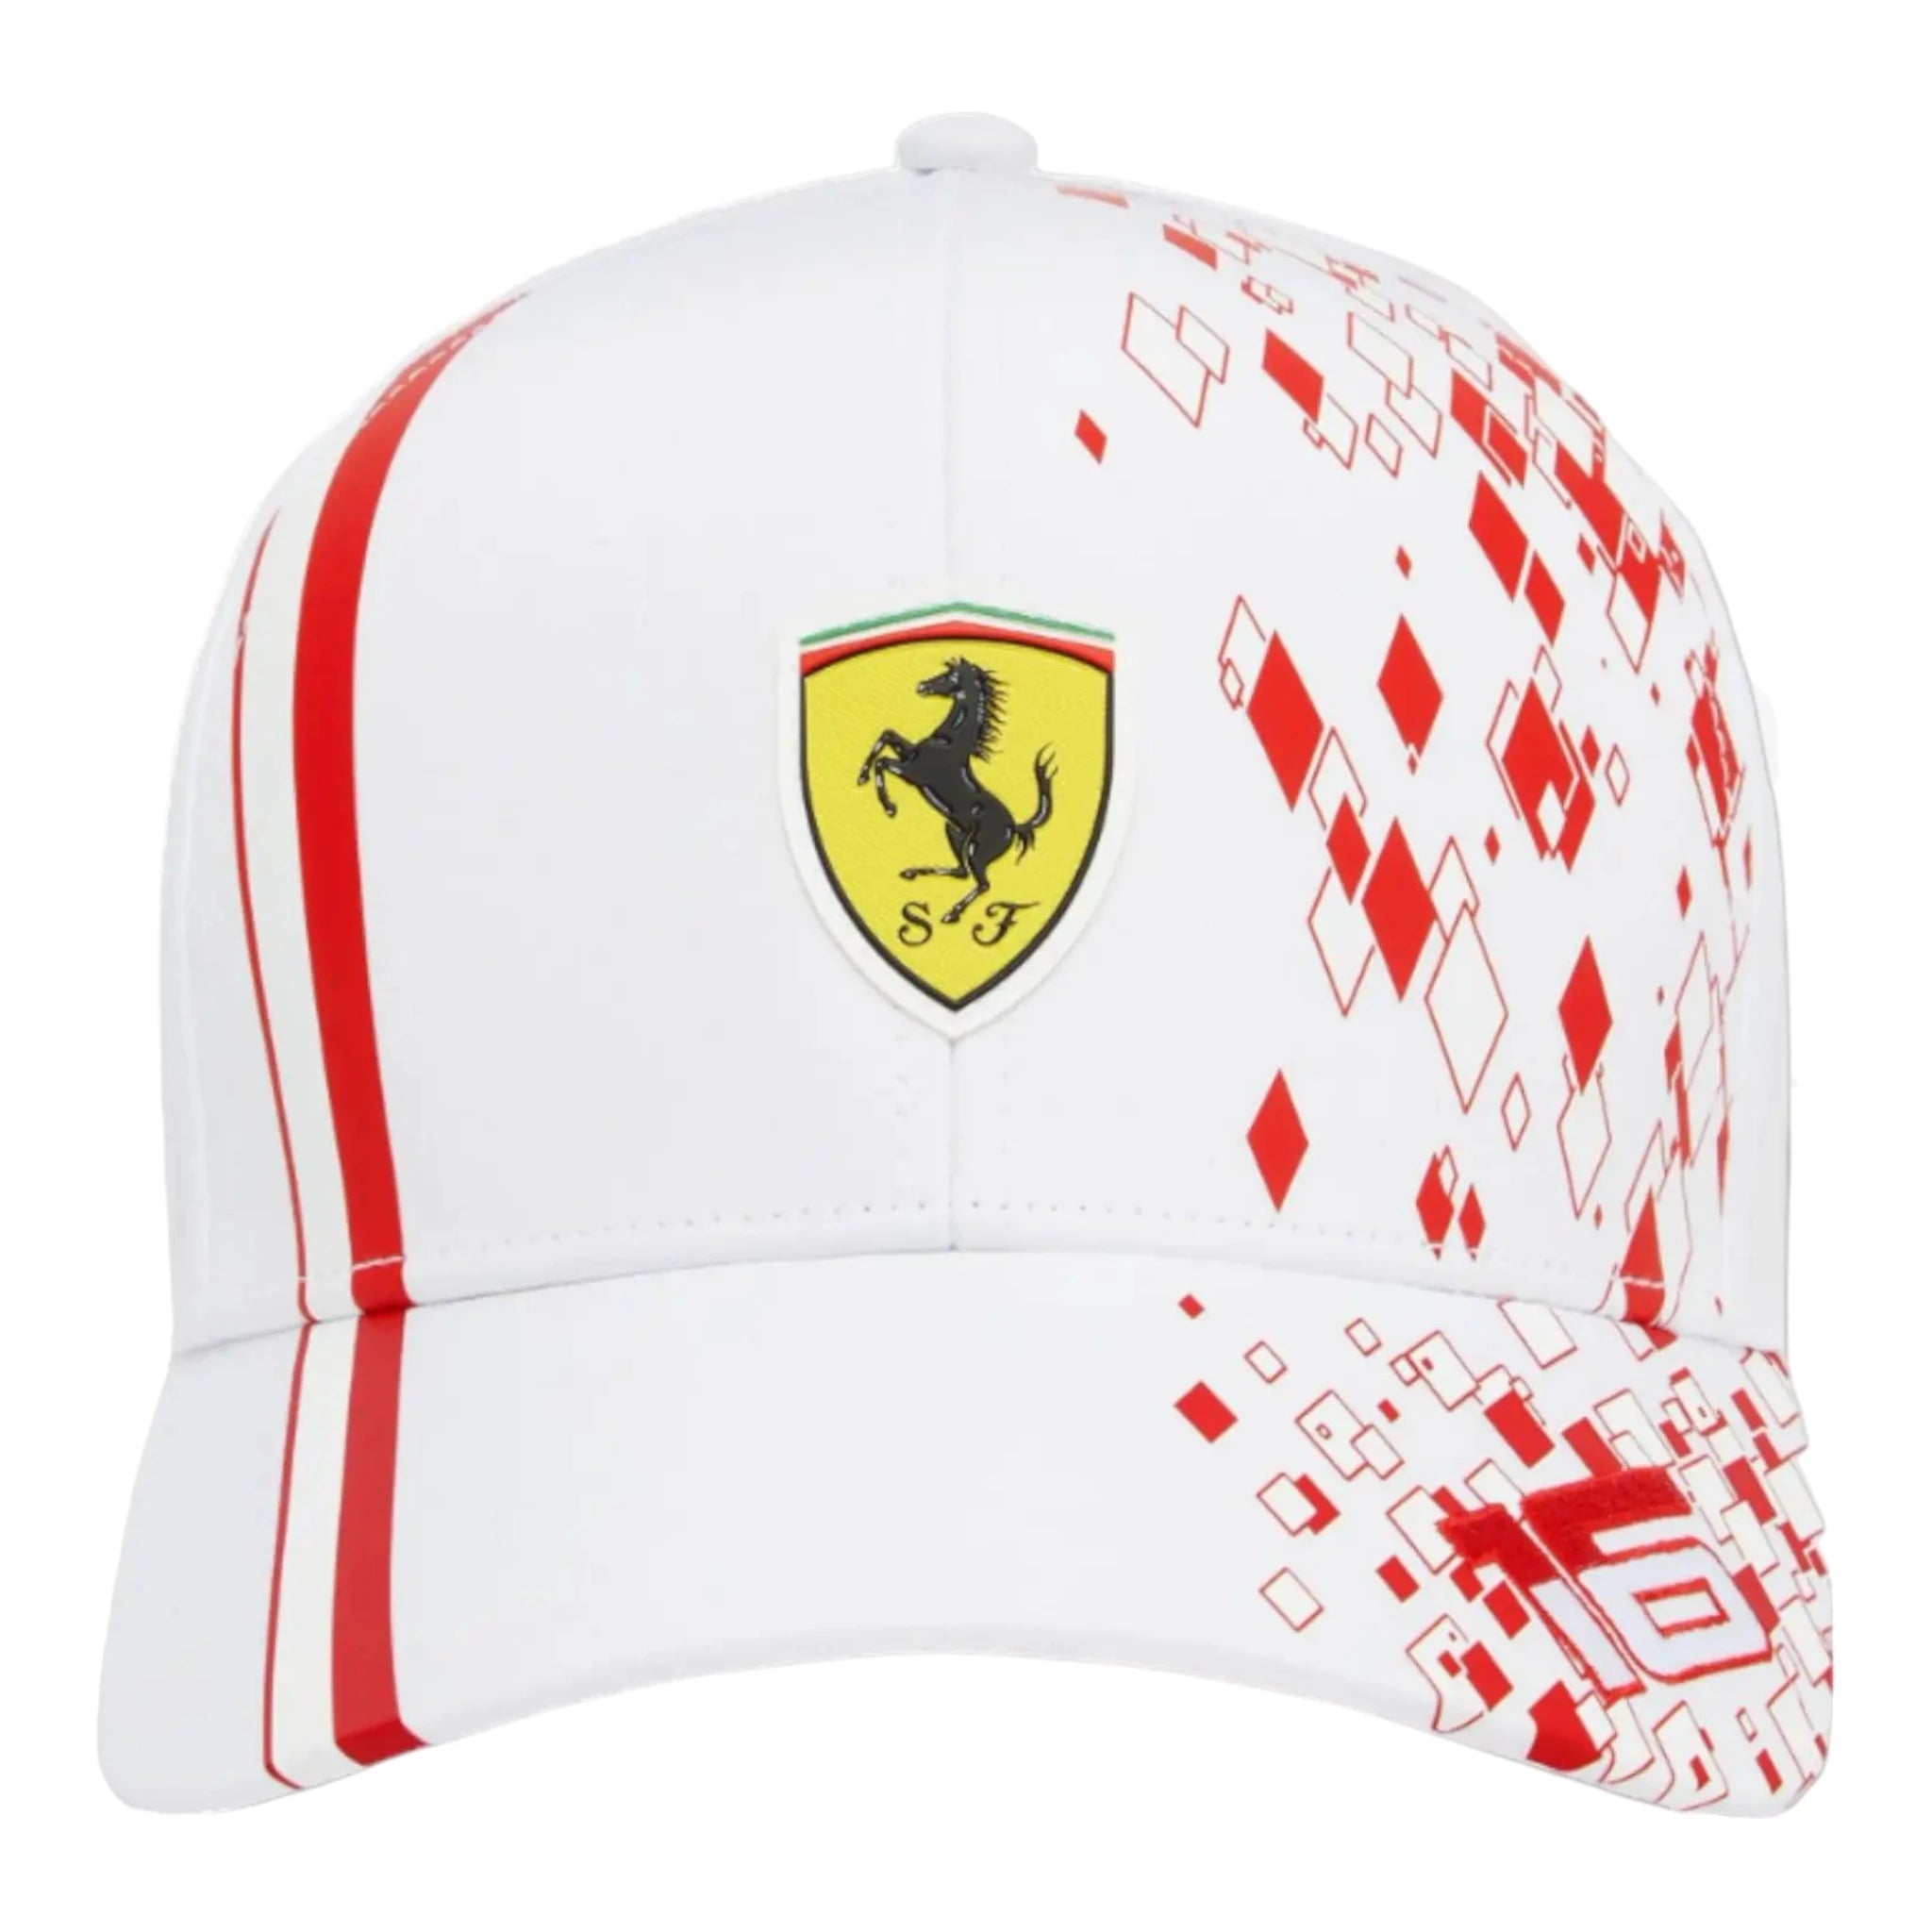 Scuderia Ferrari Team Charles Leclerc Replica hat - Monaco Special Edition